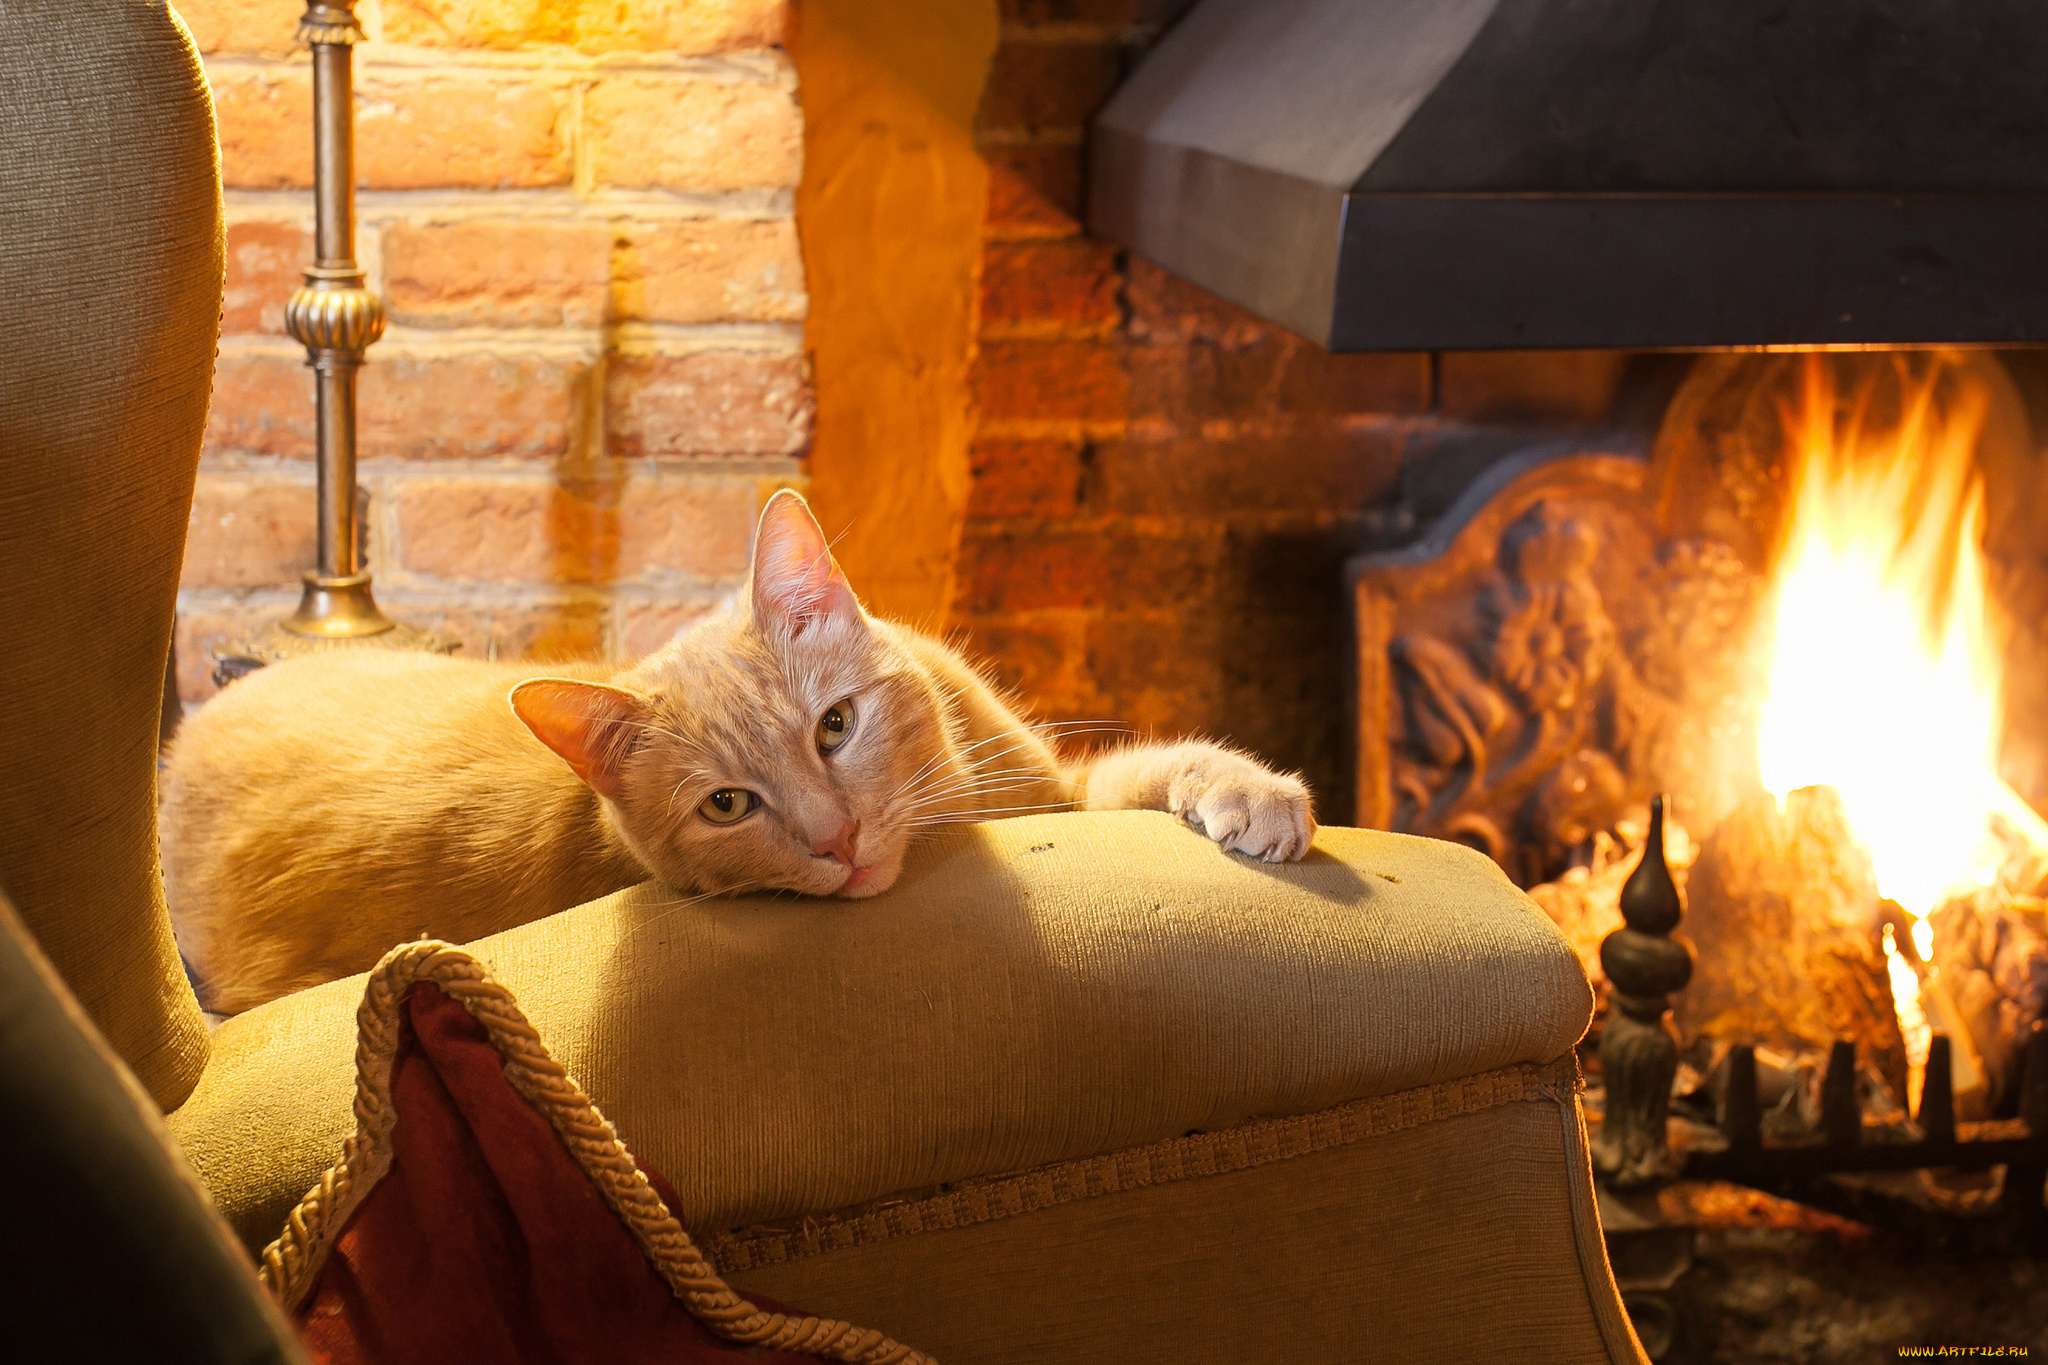 5 в теплом вечером. Уютного вечера. Котик у камина. Домашний уют. Теплый уютный камин и кот.